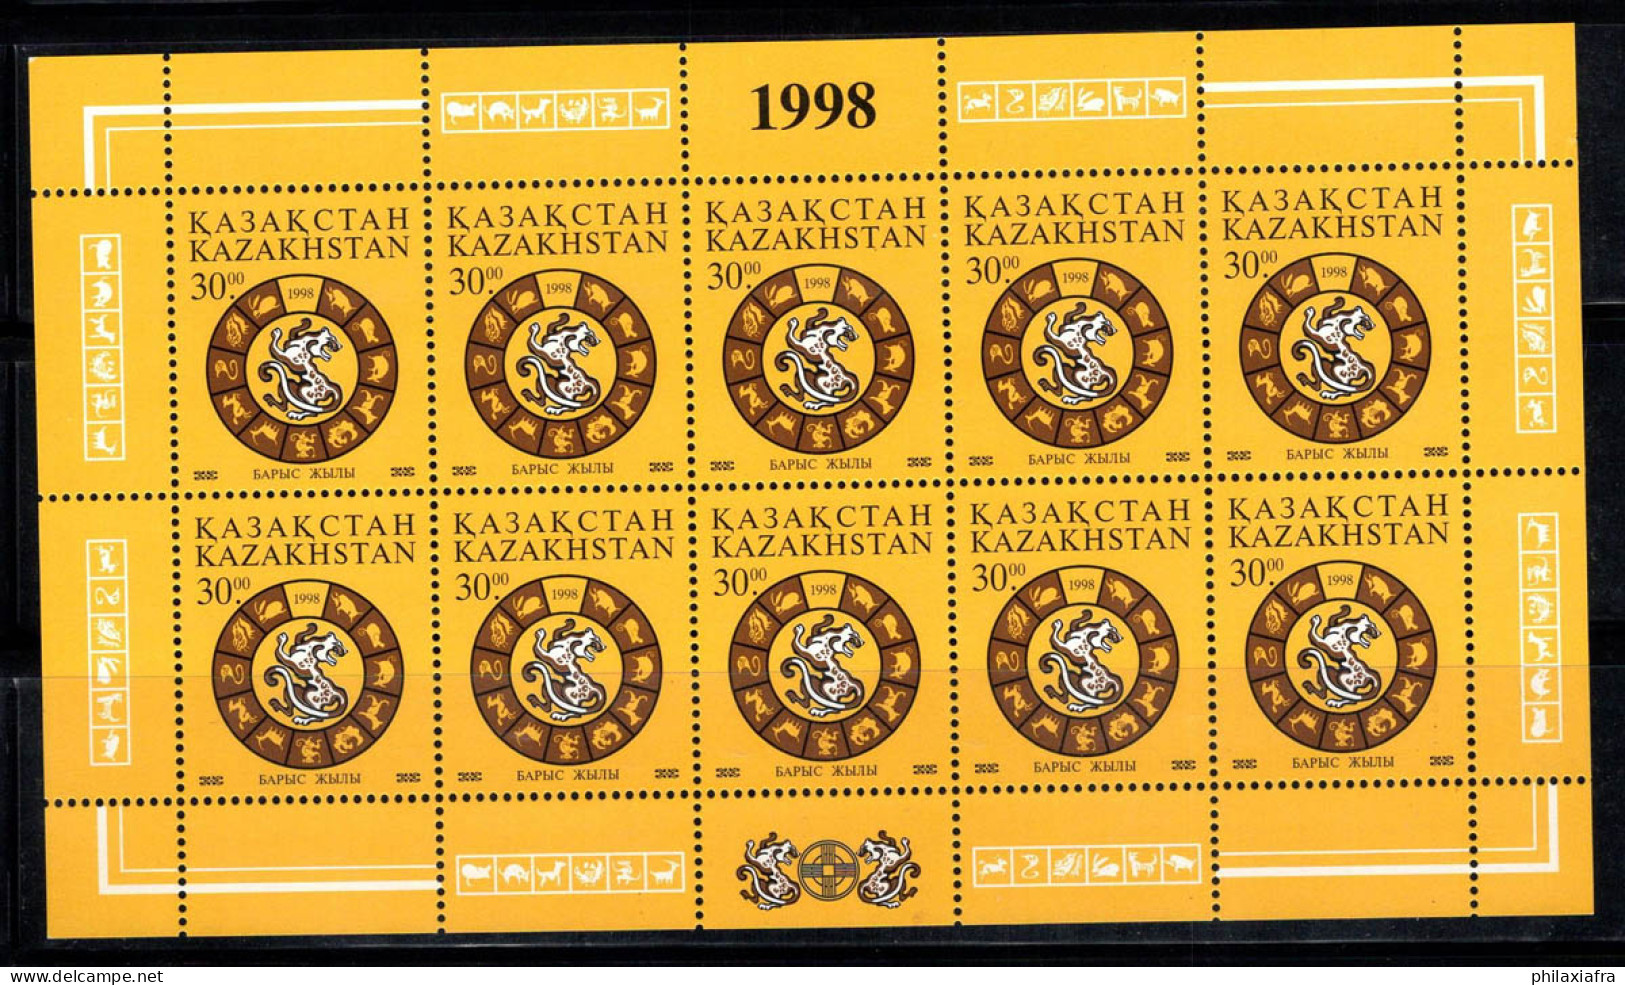 Kazakhstan 1998 Mi. 207 Mini Feuille 100% Neuf ** Nouvel An, Tigre, 30 T - Kazakhstan